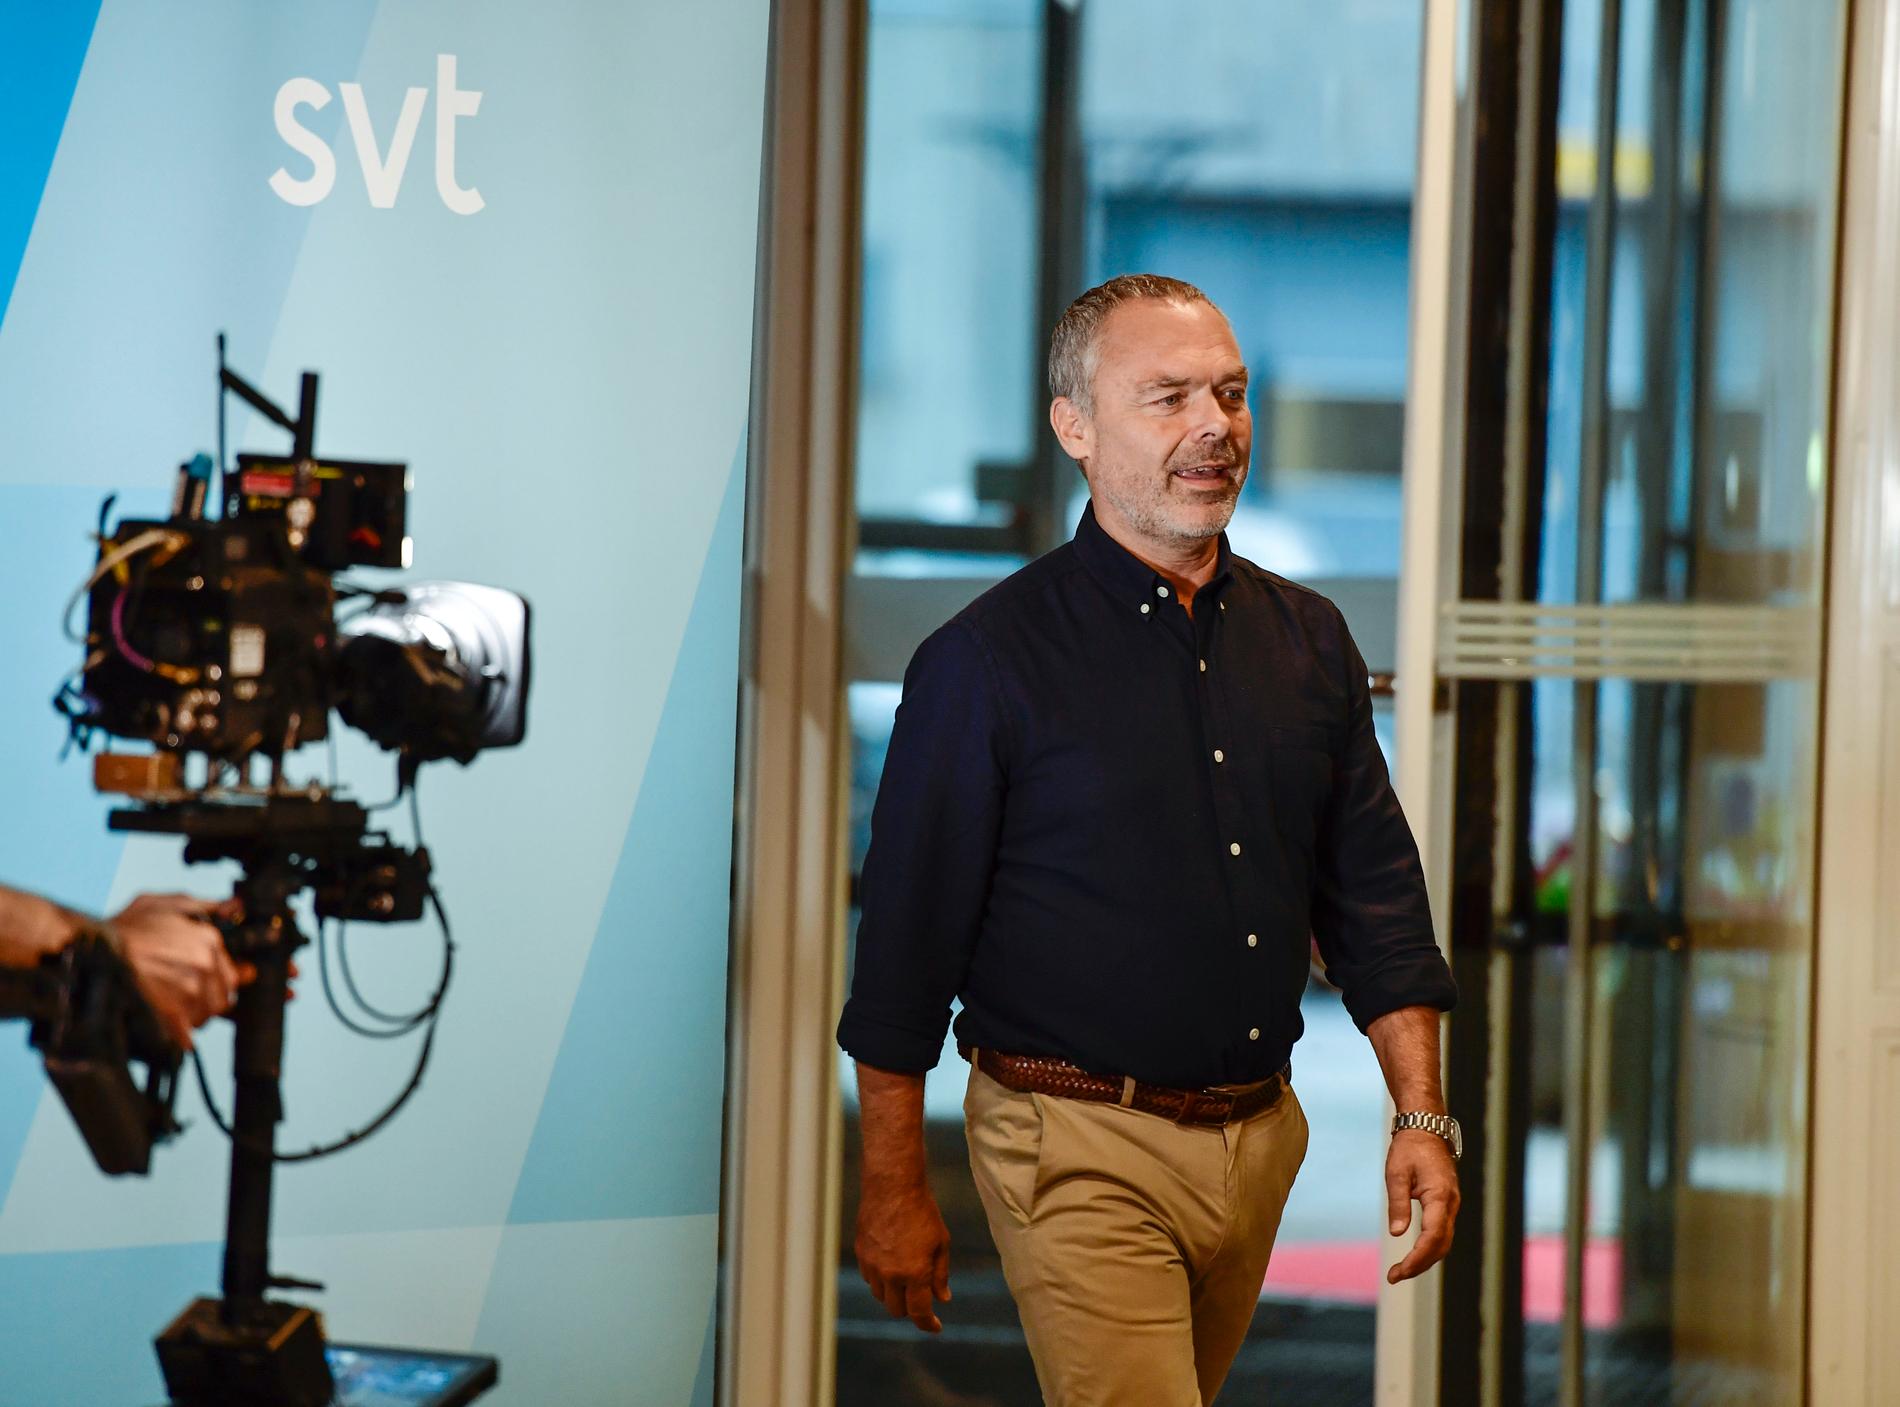 Liberalernas partiledare Jan Björklund (L) kommer till SVT:s partiledardebatt.